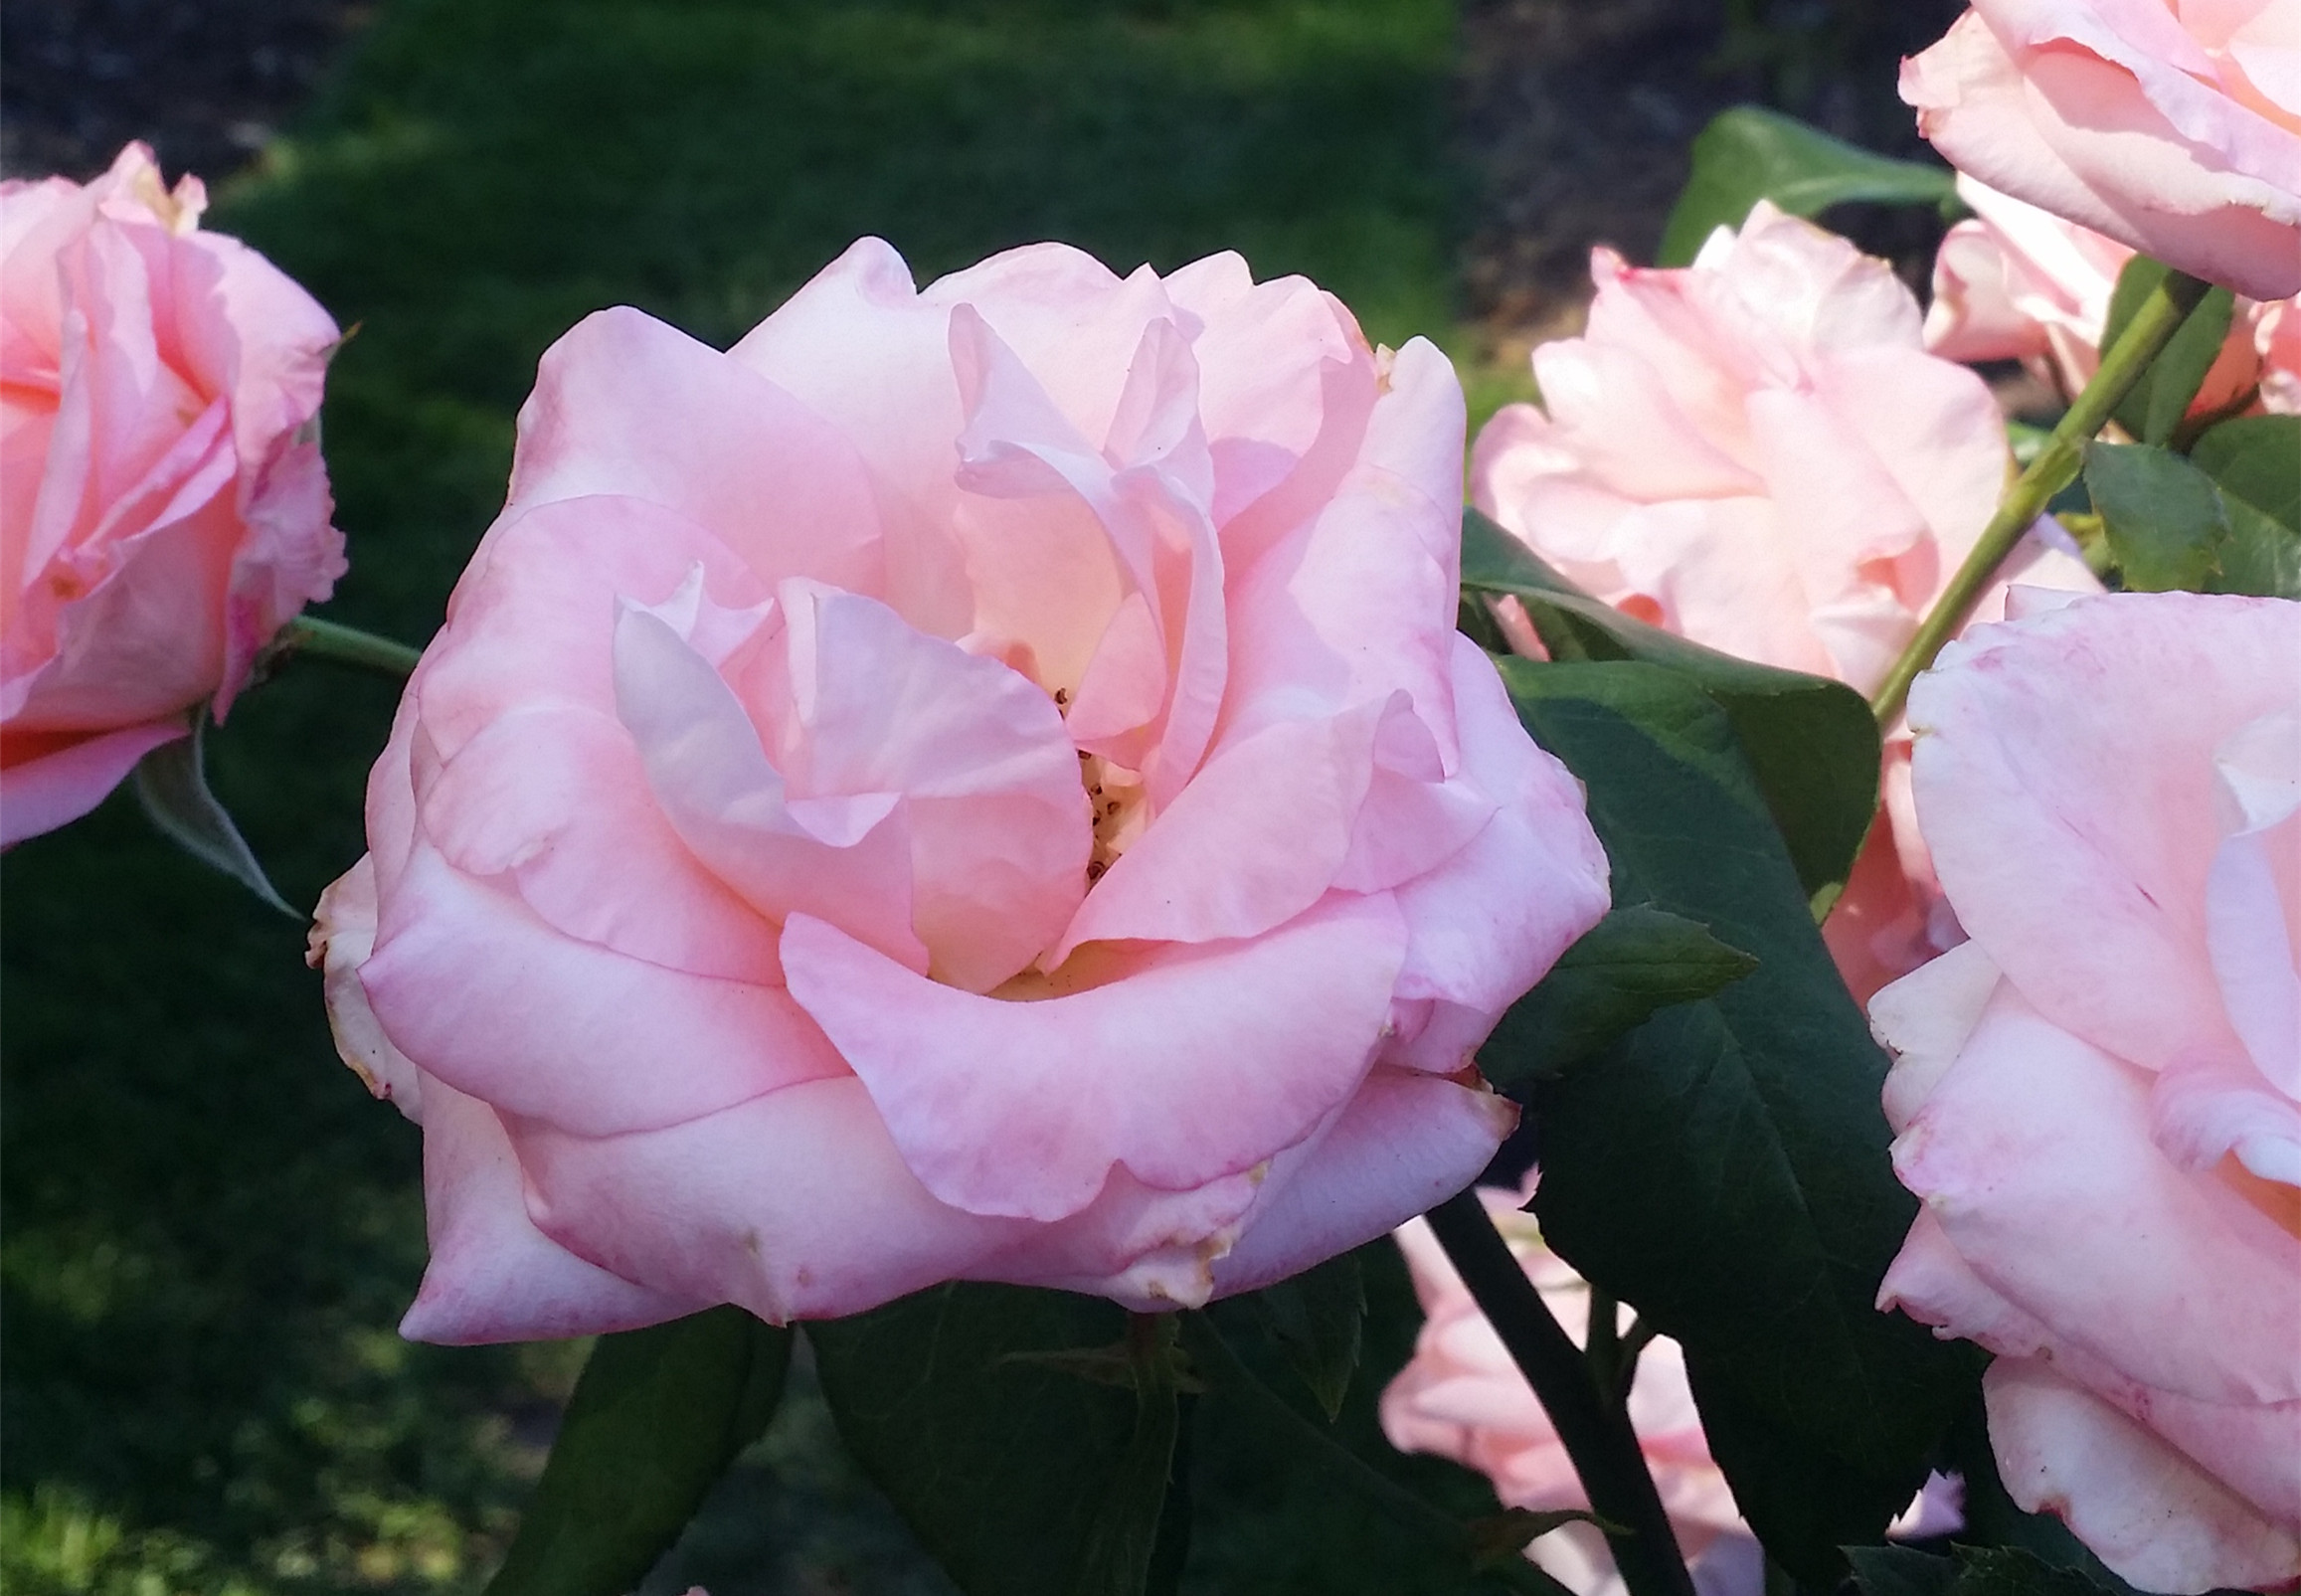 Rose garden roses